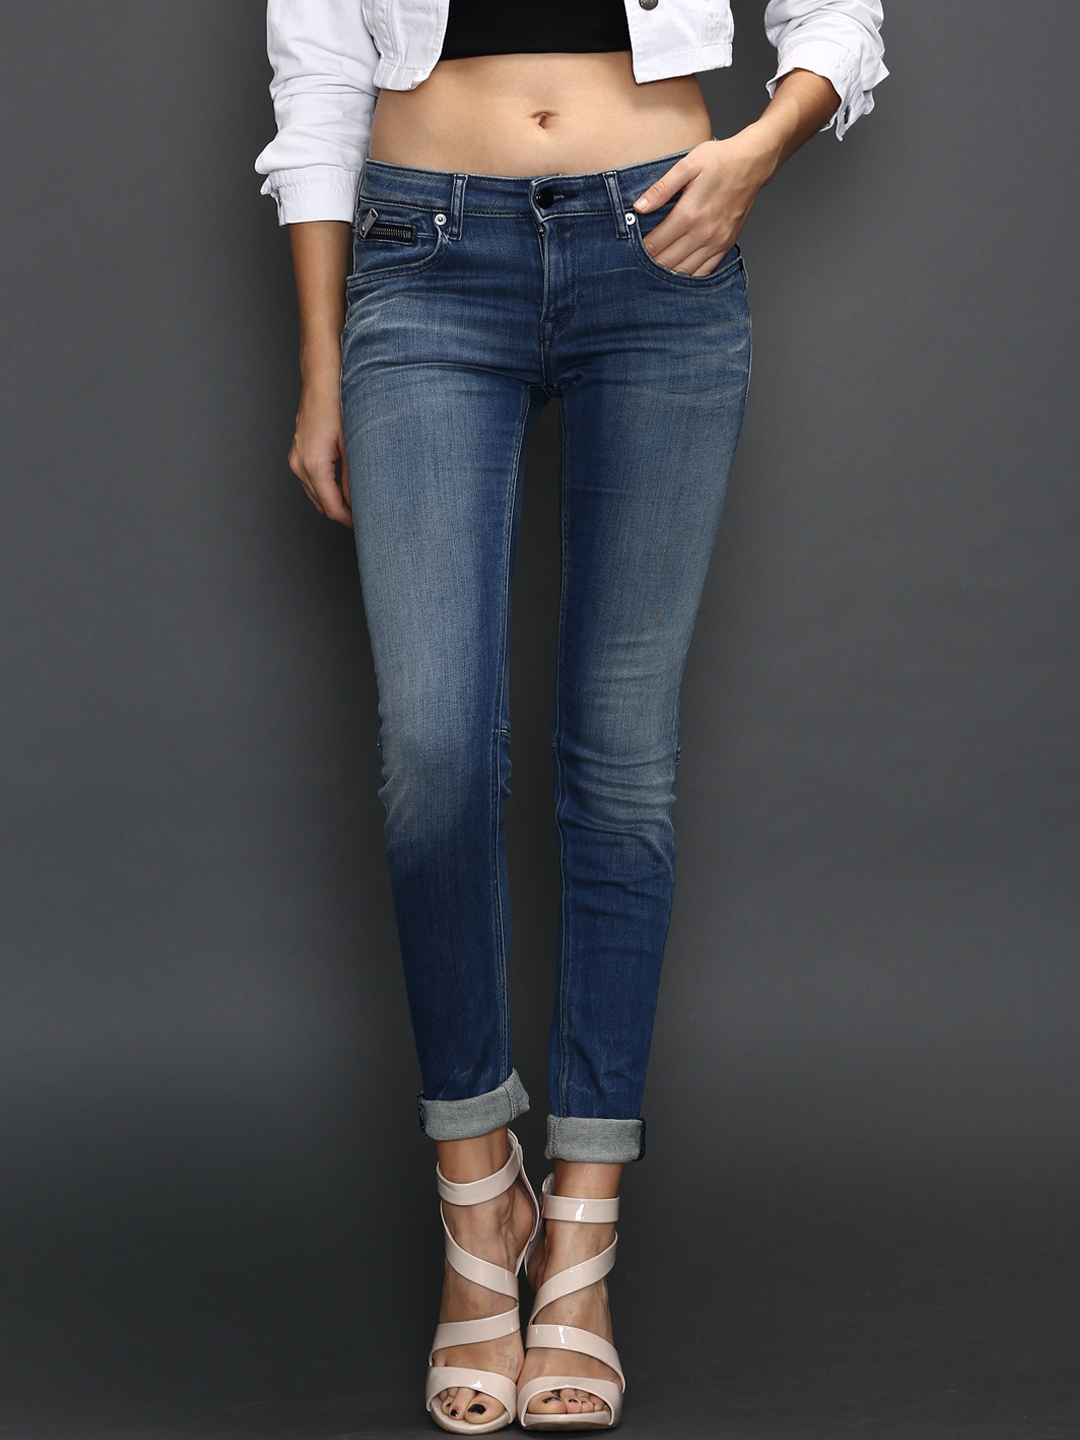 streepje De neiging hebben Vergelijkbaar Buy Replay Blue Washed Alanies Skinny Fit Stretchable Jeans - Jeans for  Women 1031624 | Myntra